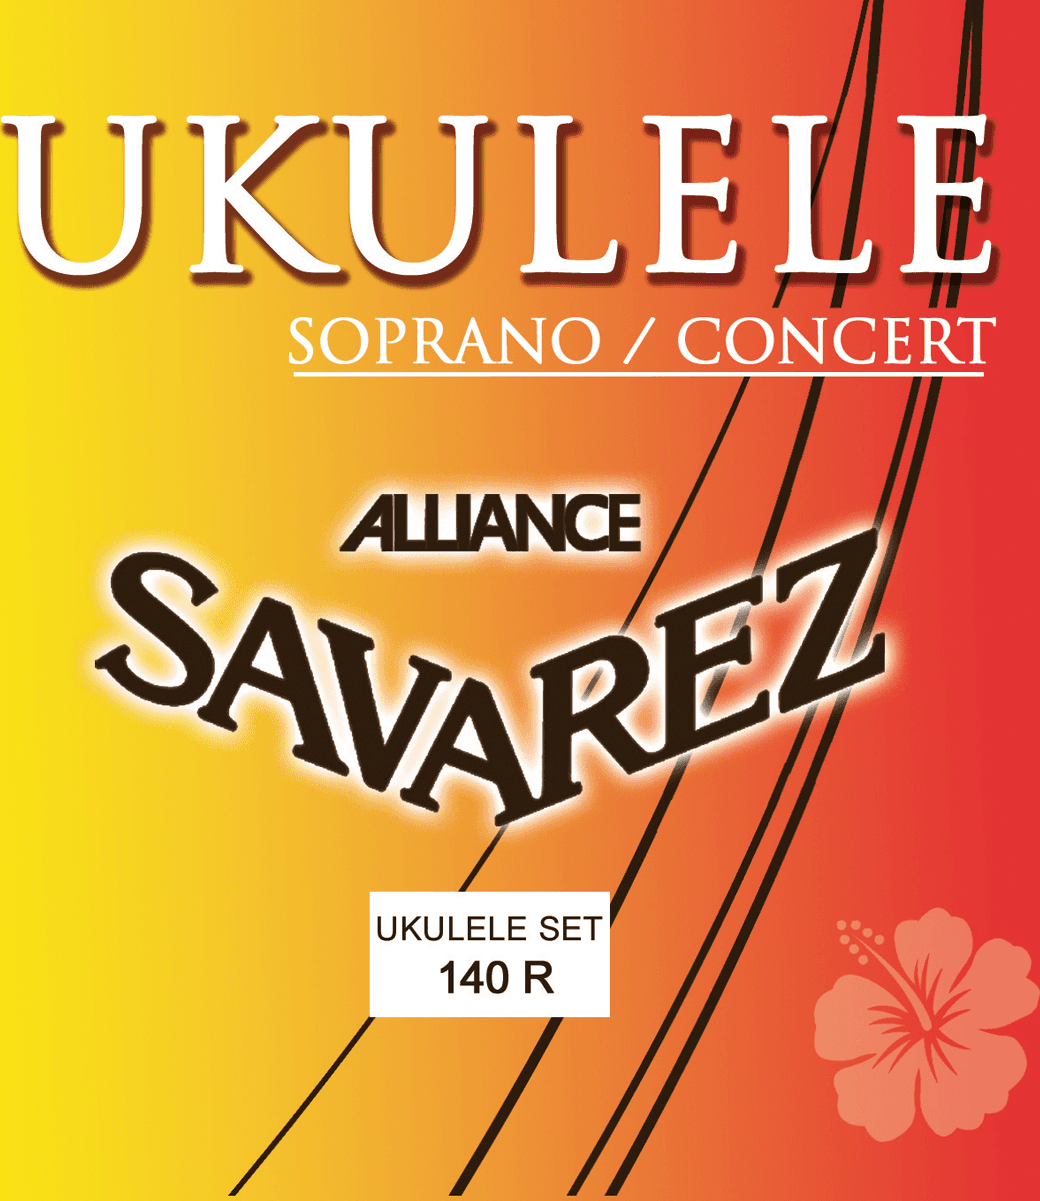 Savarez Ukulele Soprano Concert Alliance 140r - Cordes Ukelele - Main picture